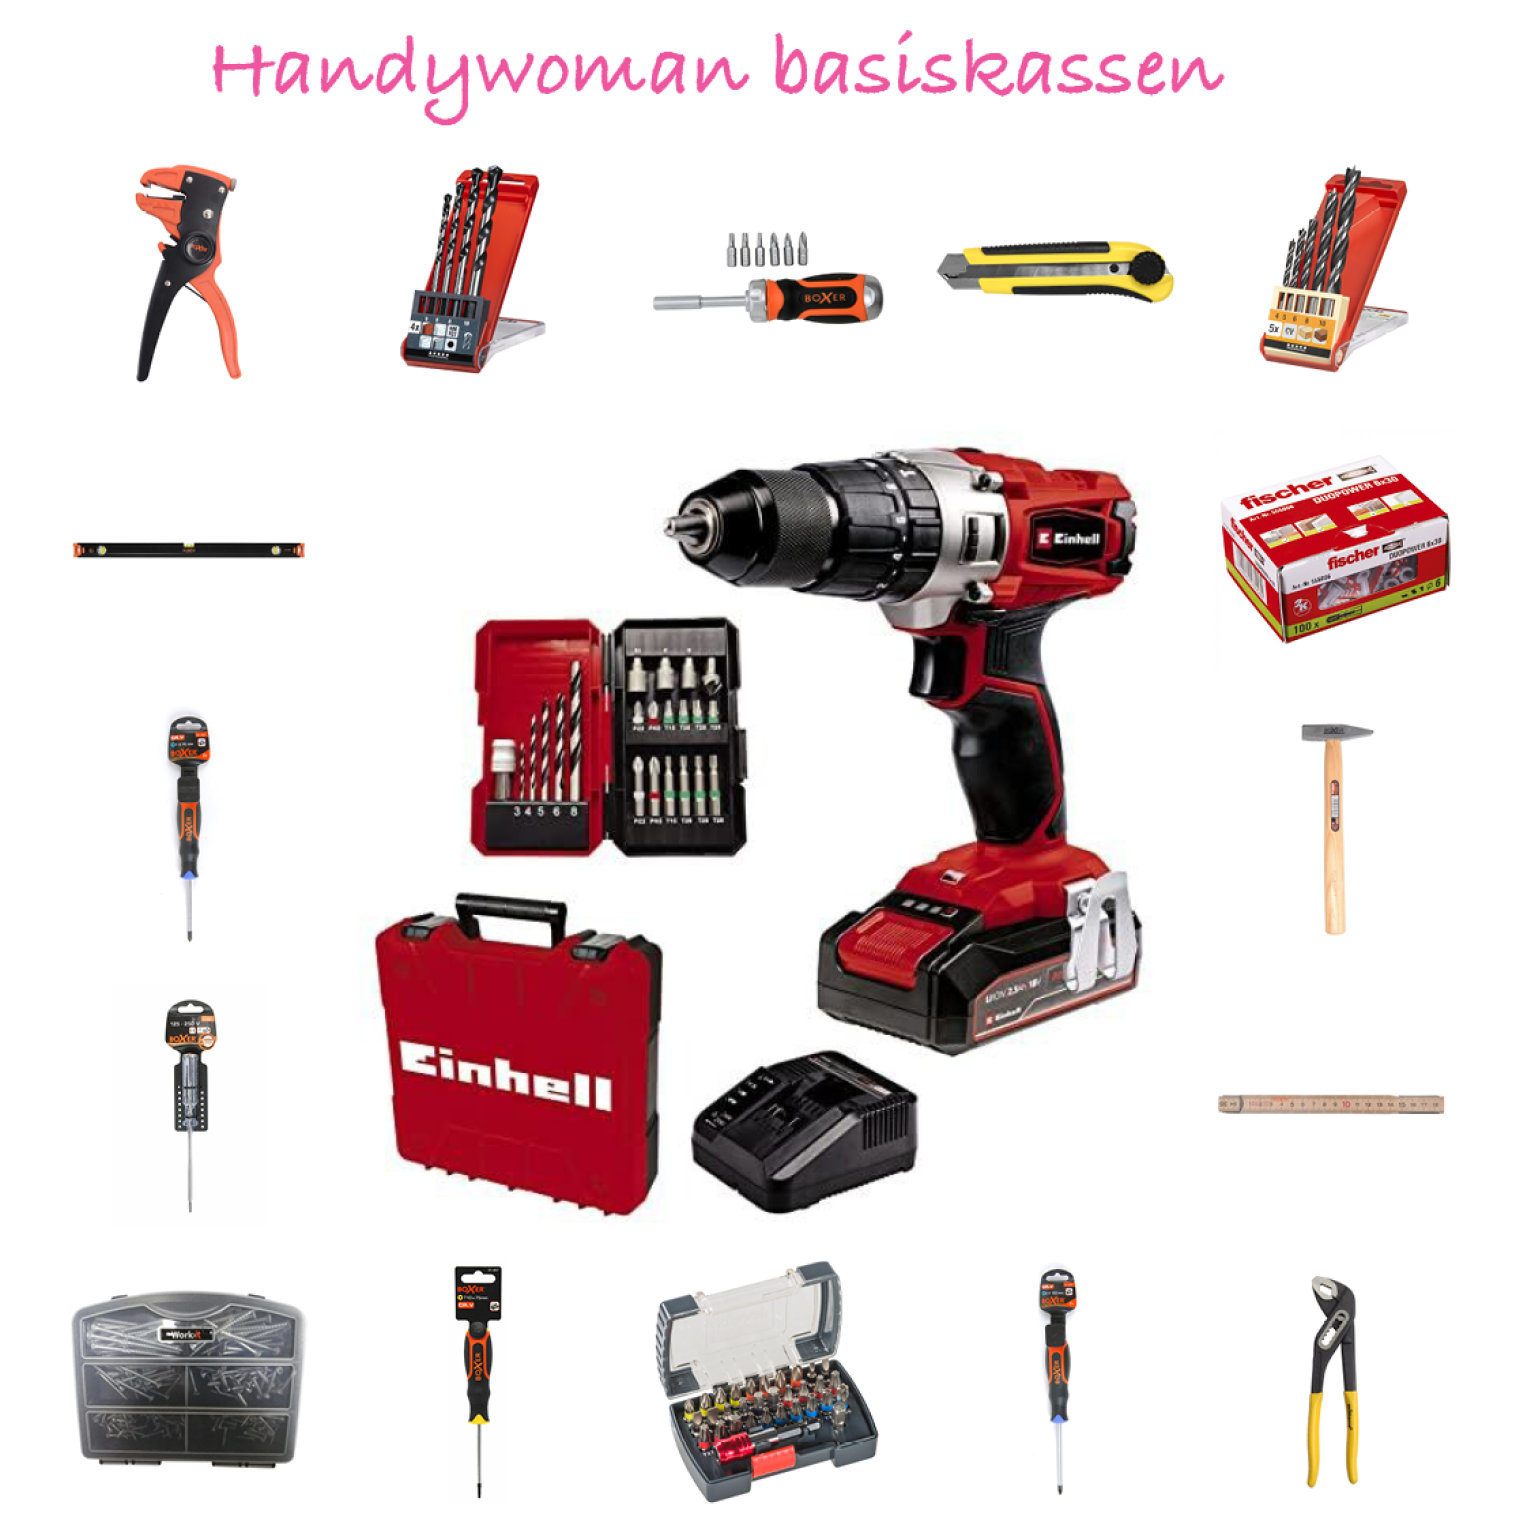 Handywoman værktøjskassen - basis til kvinder